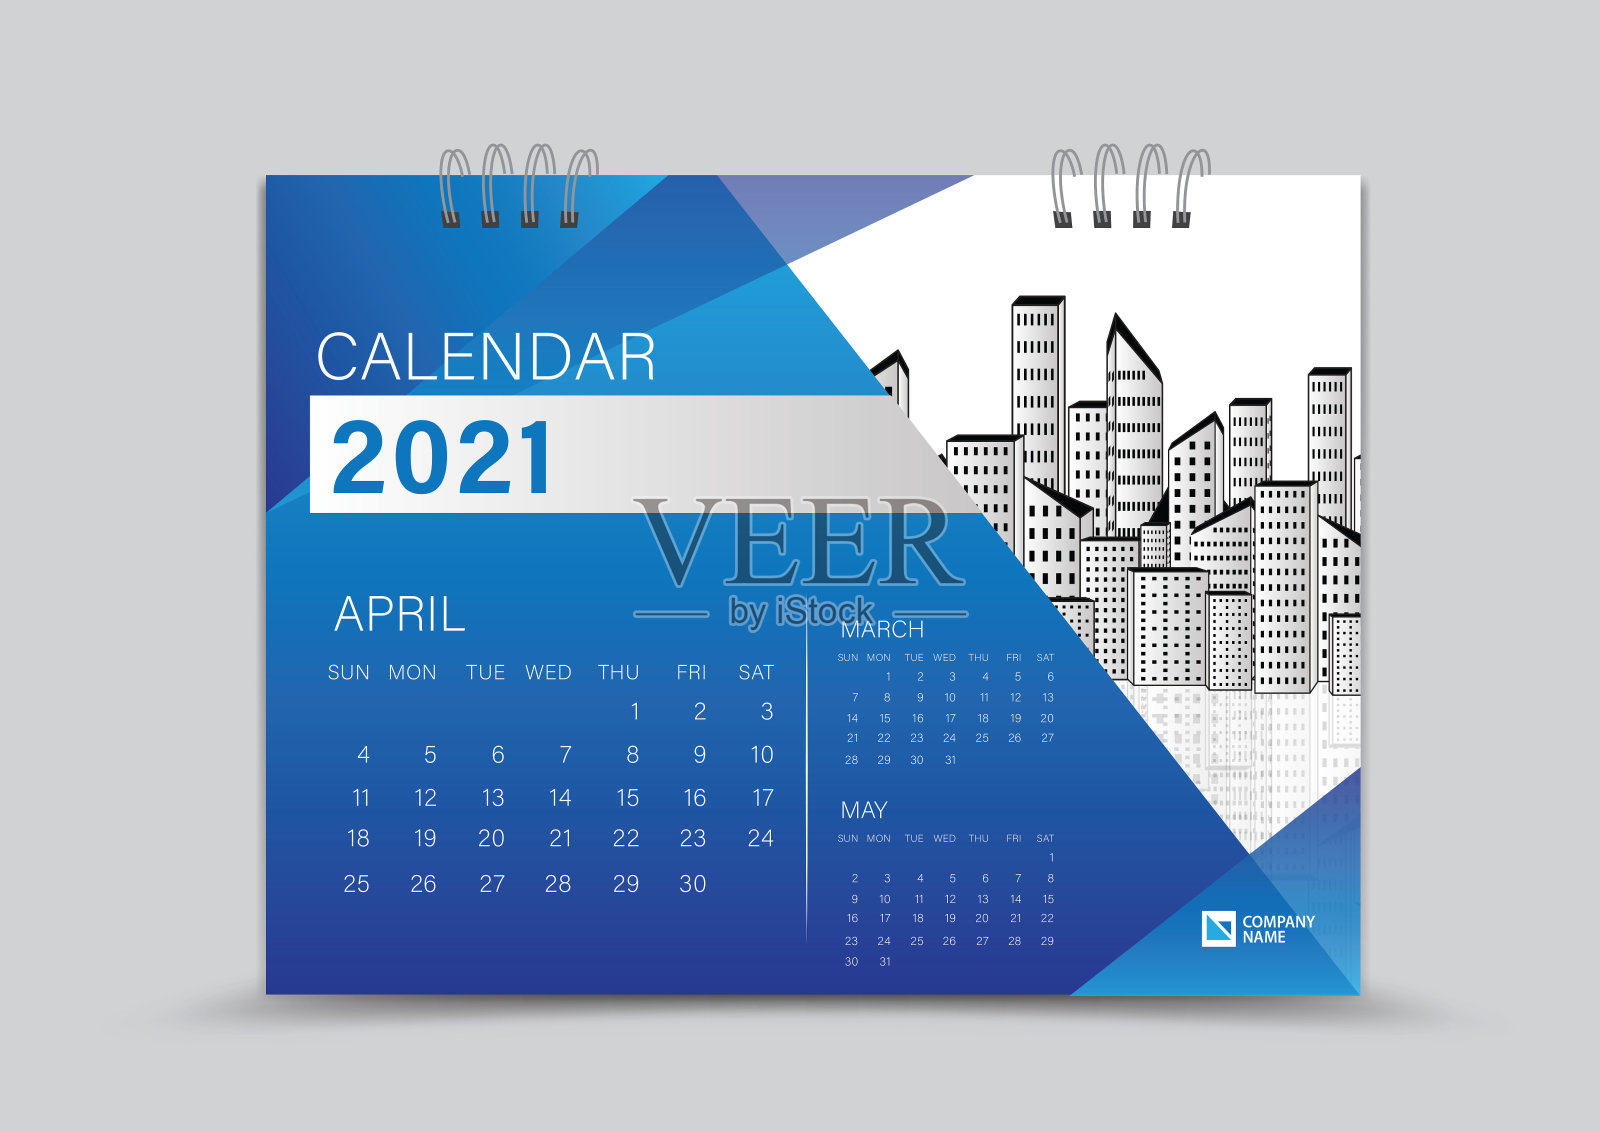 桌面日历2021创意设计可以放置照片和标志，周开始于周日，4月页矢量日历2021模板，蓝色渐变背景设计模板素材